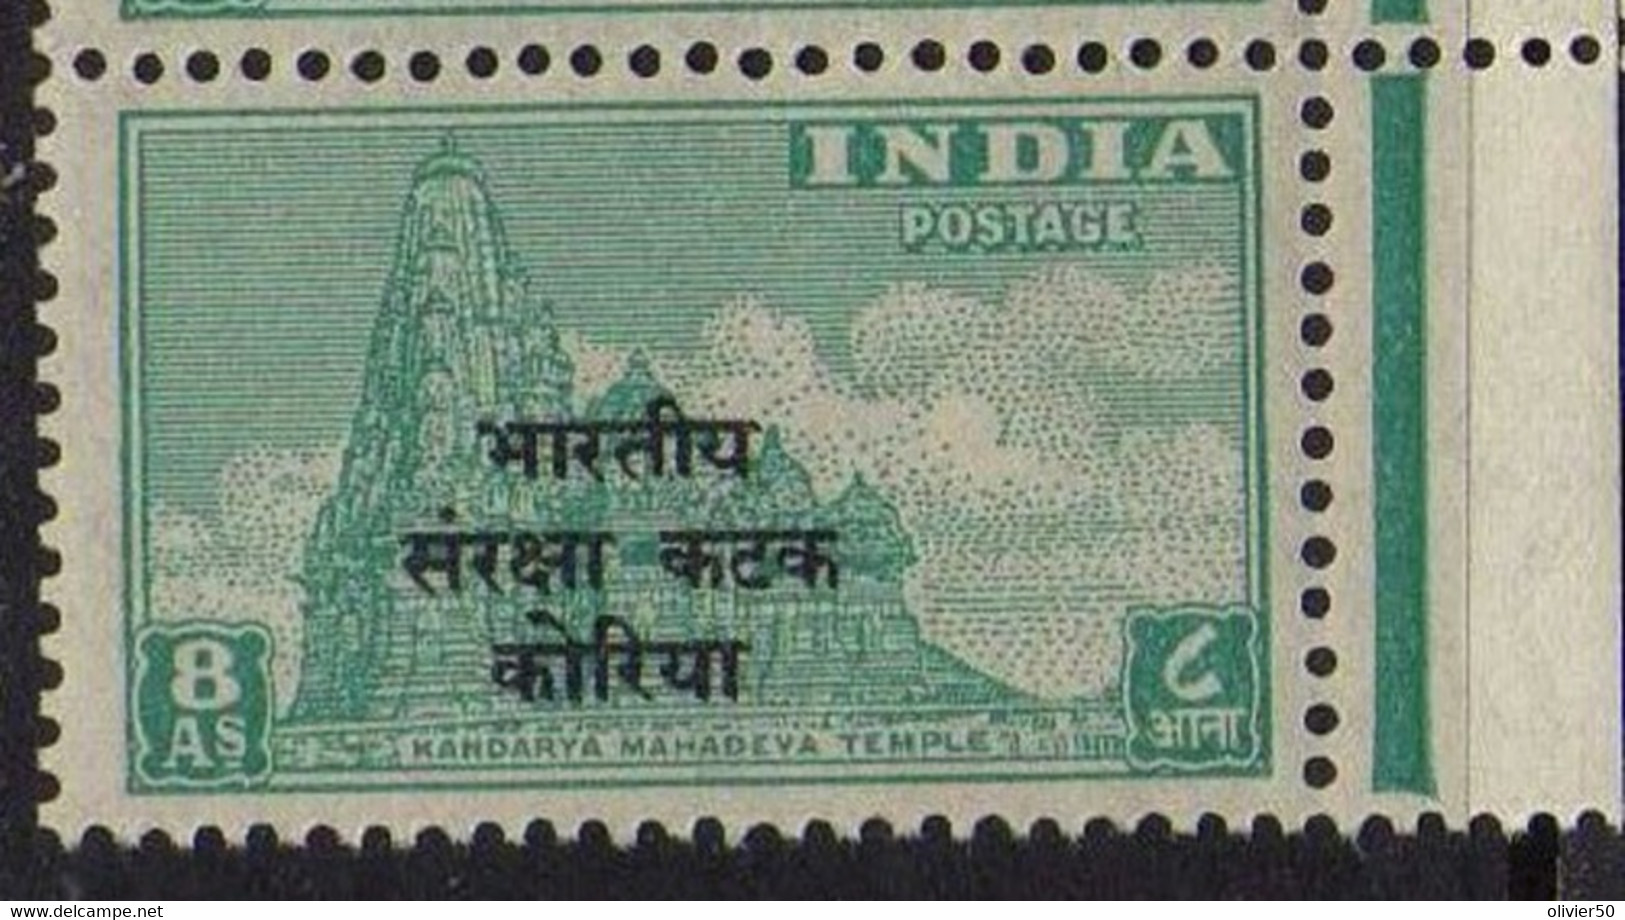 Inde (1953)  - Franchise Pour Les Troupes En Coree - Neufs** - MNH - Militärpostmarken